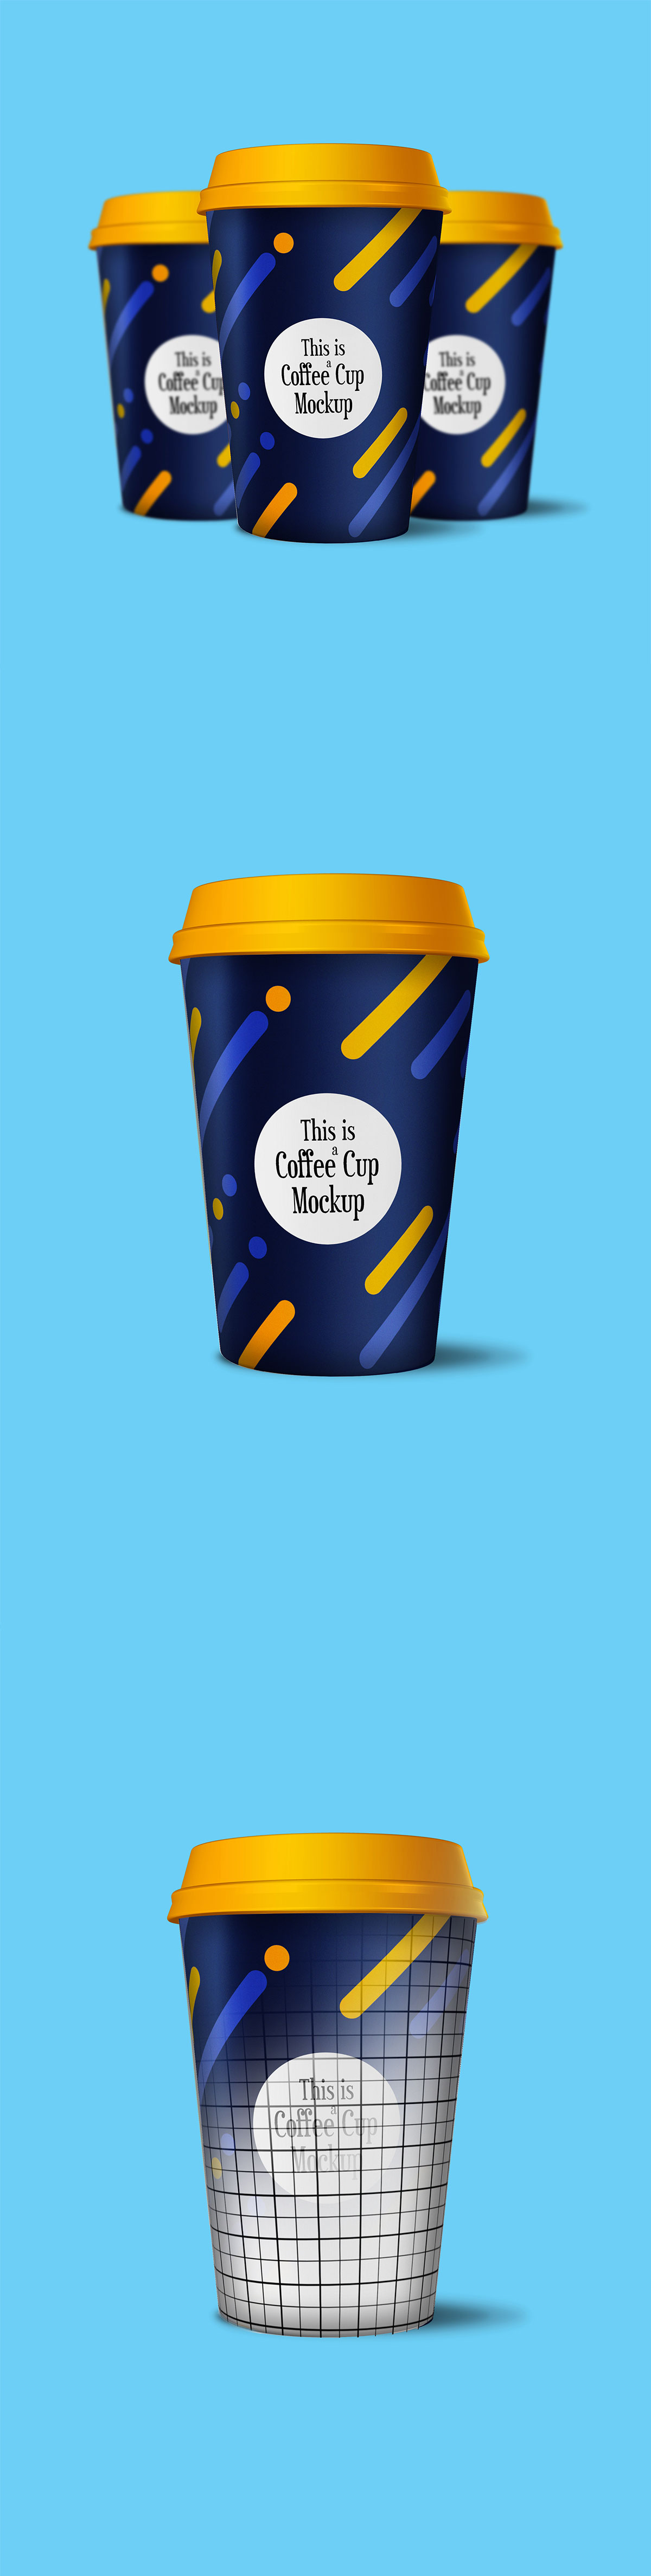 Free Coffee Cup PSD Mockup